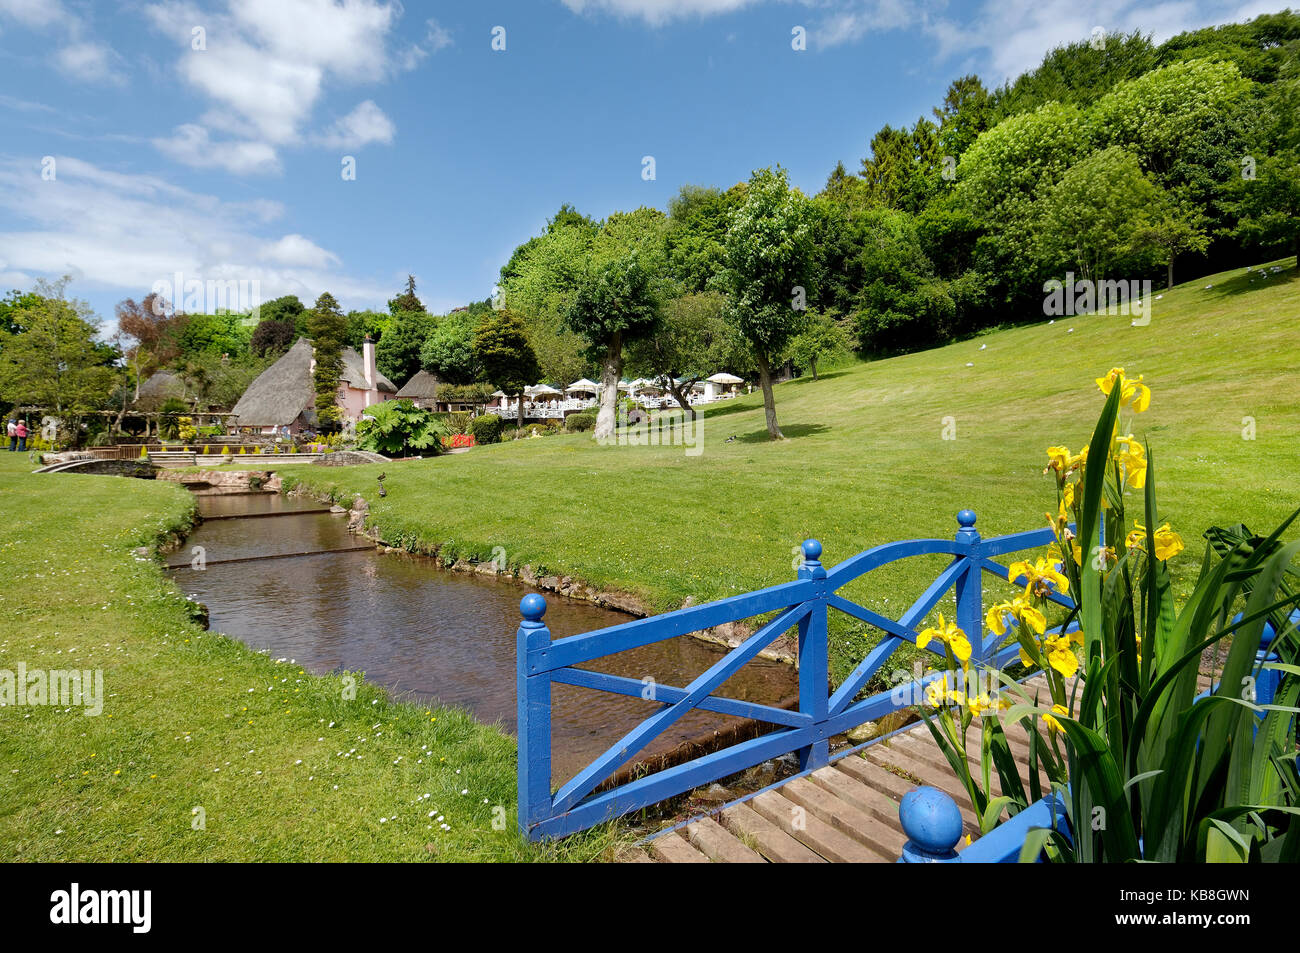 Rose Cottage Tea Gardens, cockington Torquay Devon, Reino Unido - vistas al jardín de césped y arroyo con puente y iris amarillo en primer plano Foto de stock